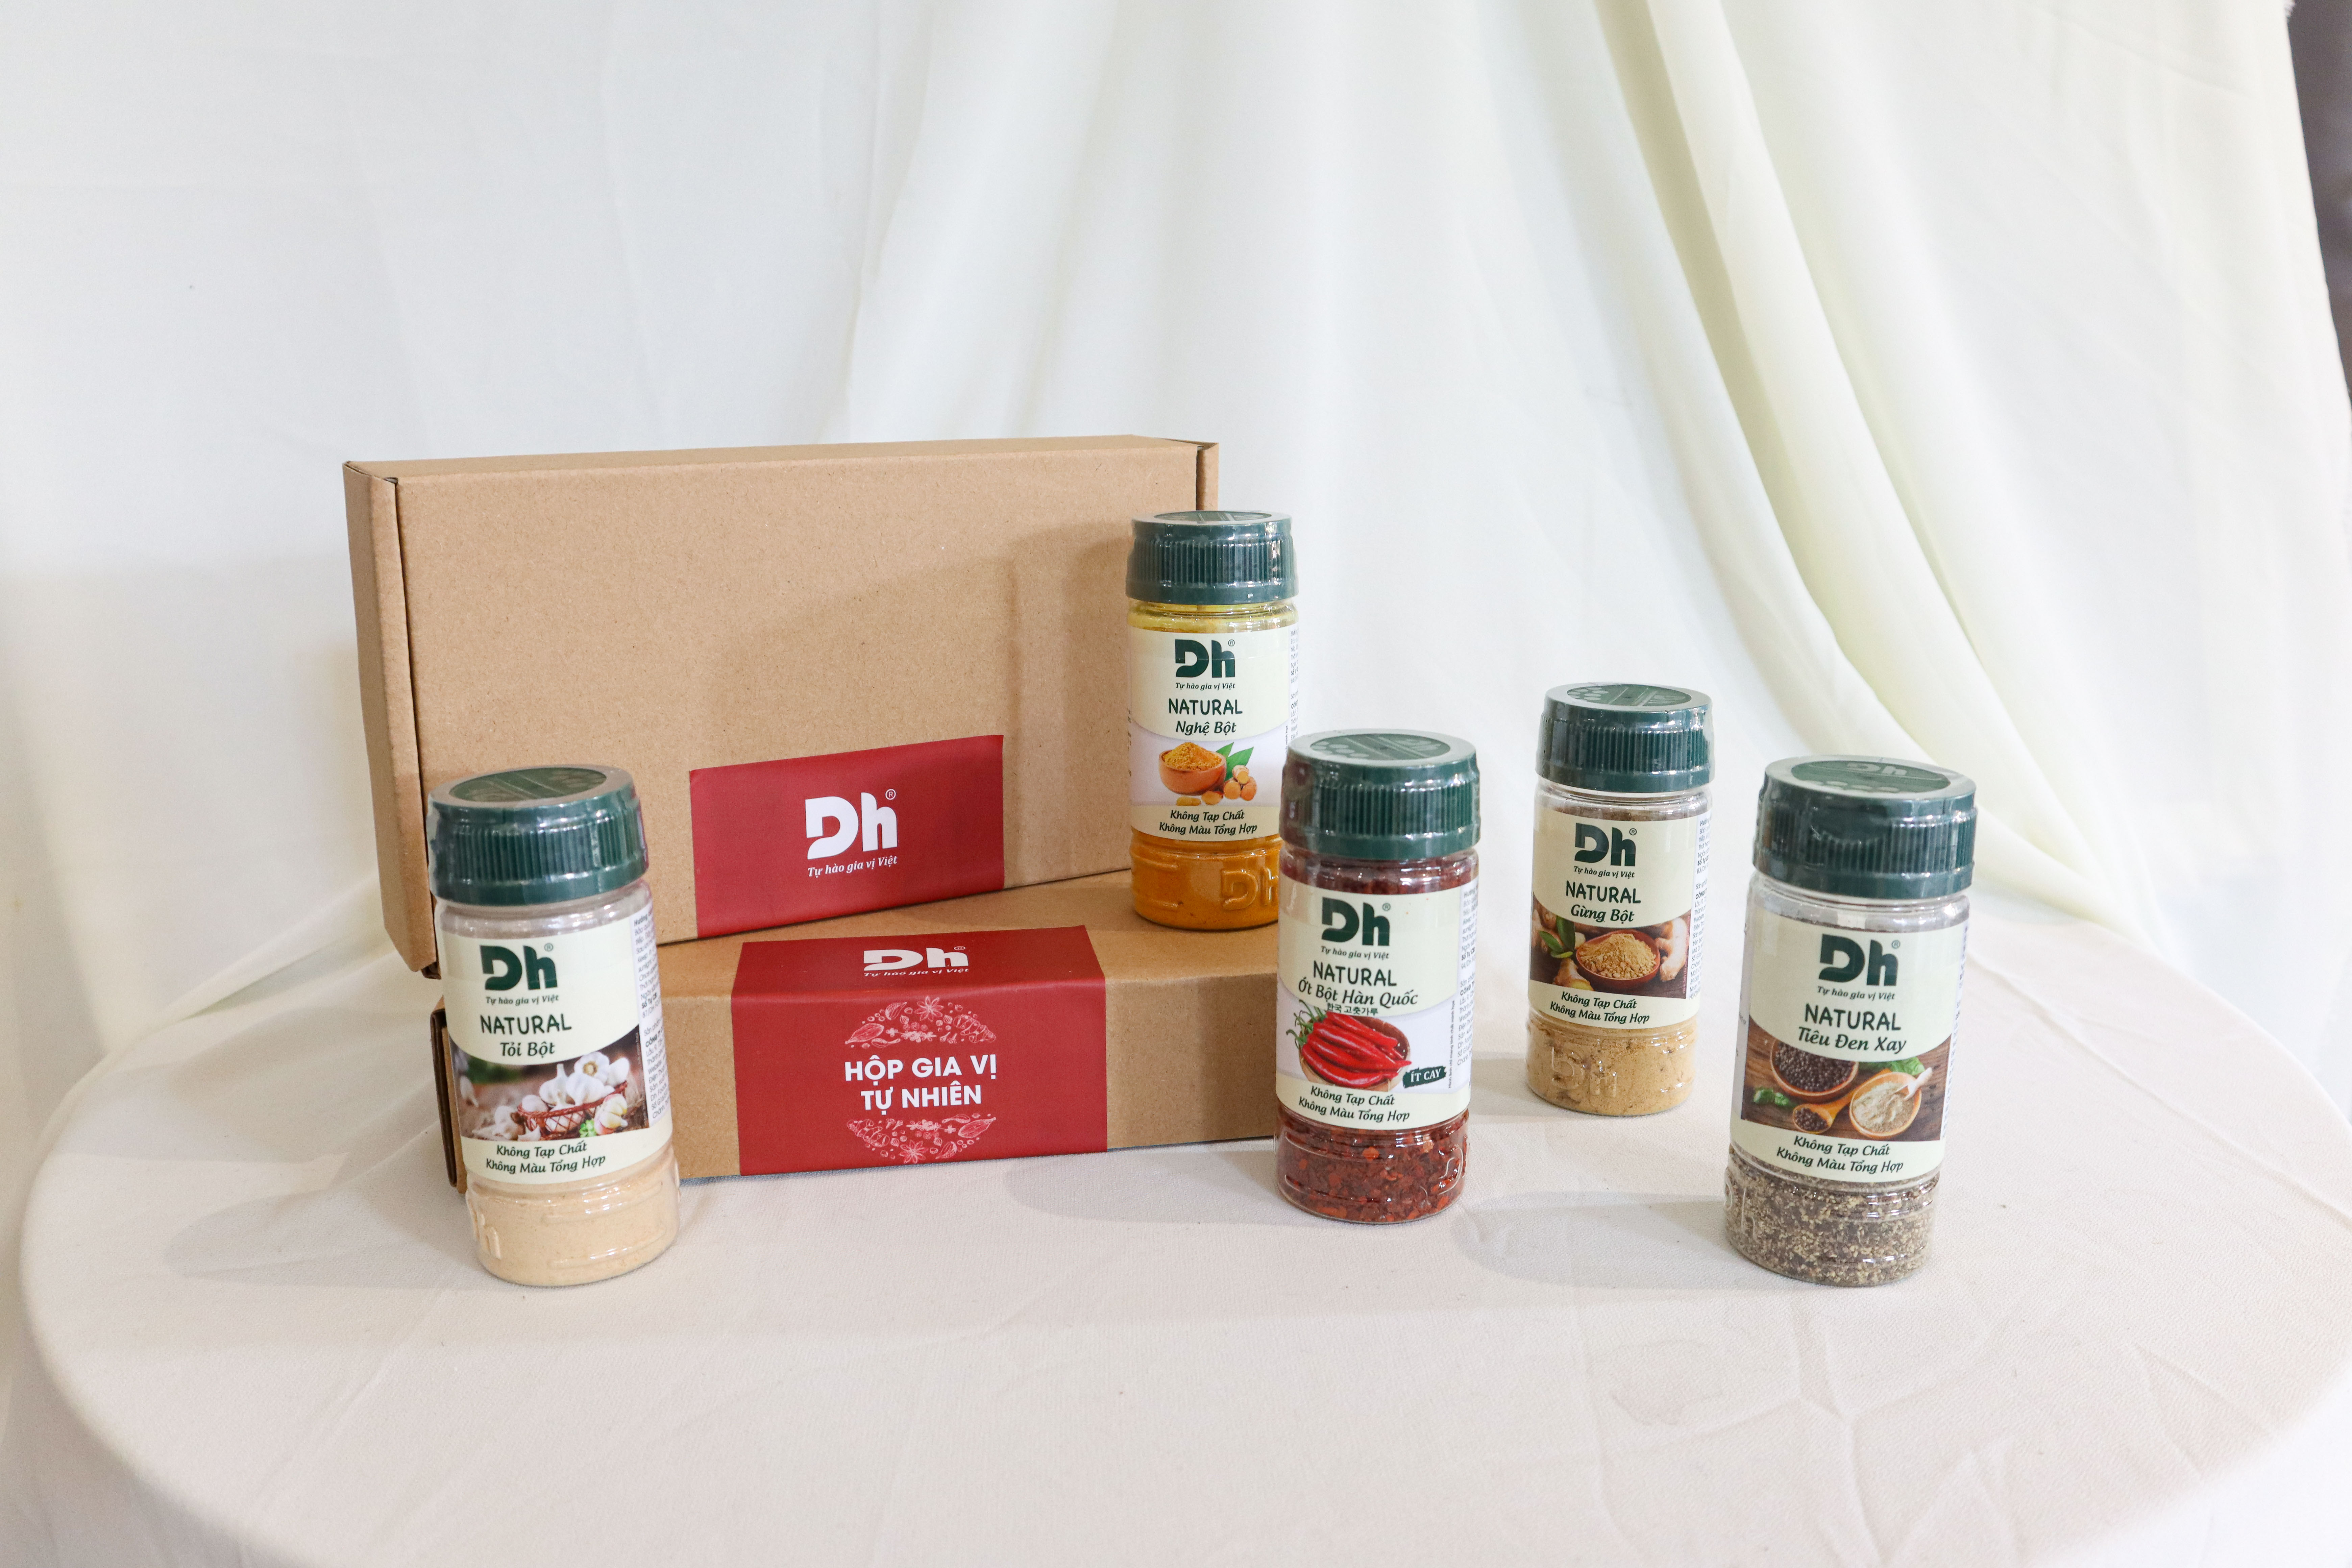 Hình ảnh Hộp Gia Vị Tự Nhiên Dh Foods - Set 5 loại nguyên liệu chế biến thực phẩm - Natural Ớt Bột Hàn Quốc, Tiêu Đen Xay, Tỏi Bột, Nghệ Bột, Gừng Bột